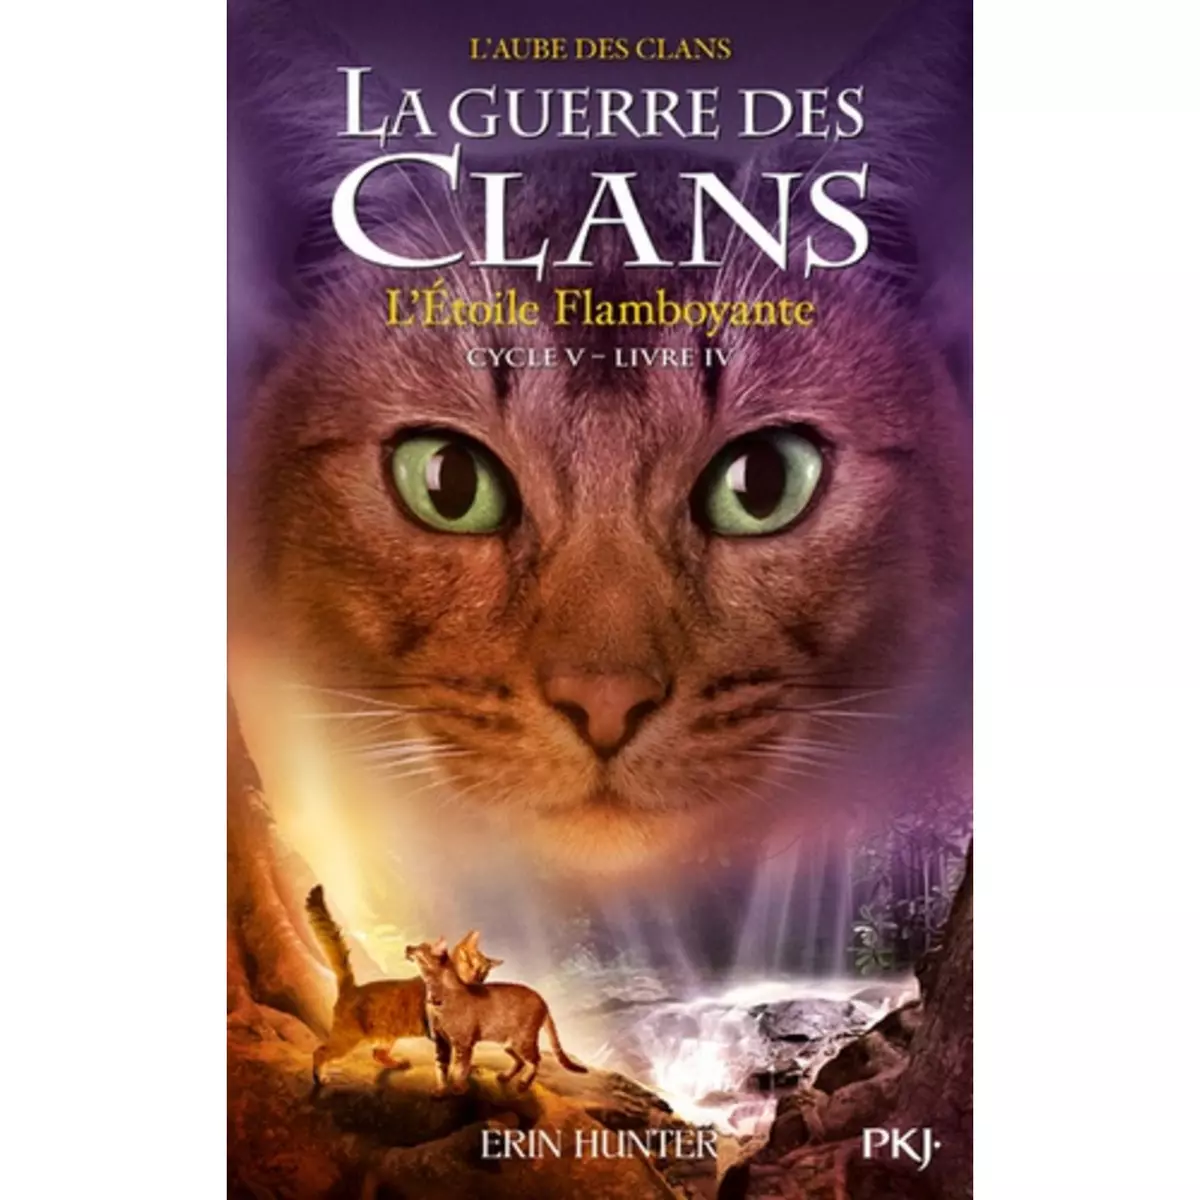  LA GUERRE DES CLANS : L'AUBE DES CLANS (CYCLE V) TOME 4 : L'ETOILE FLAMBOYANTE, Hunter Erin